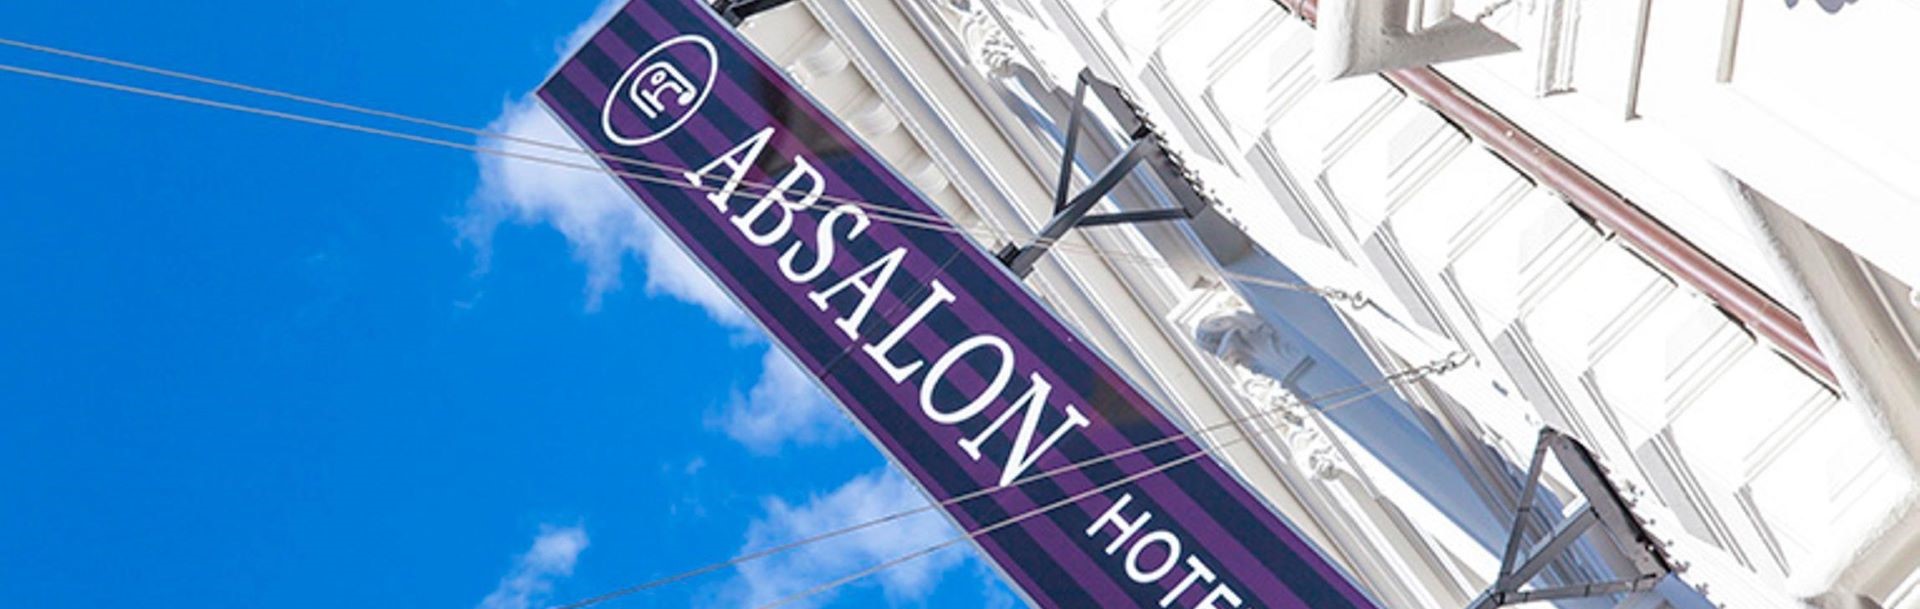 Absalon Hotel 